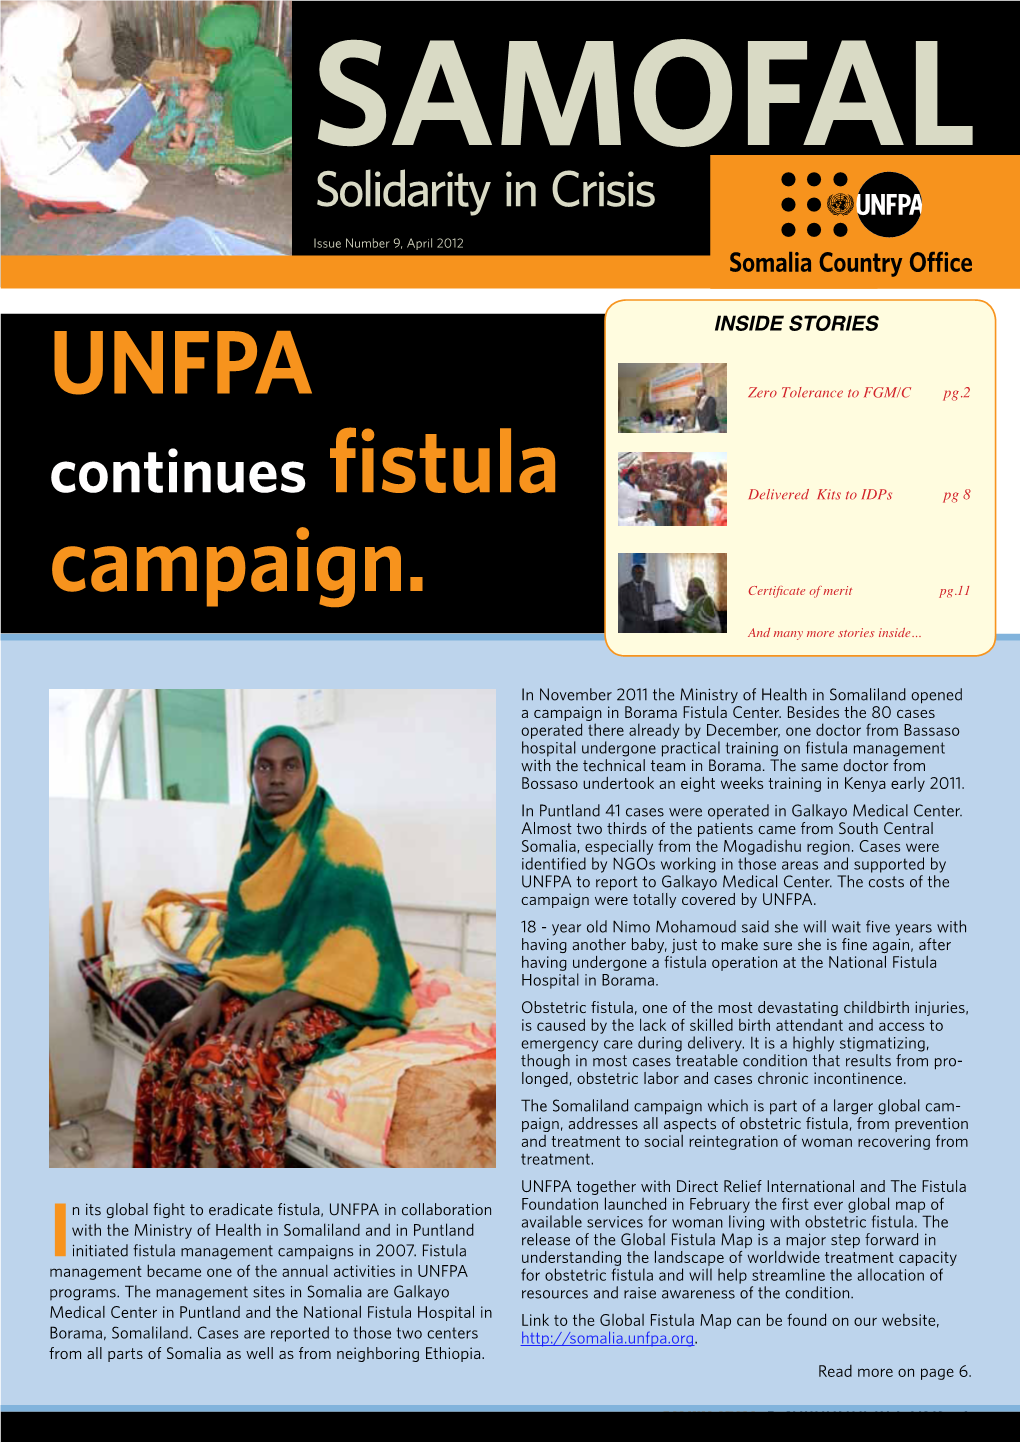 UNFPA Campaign